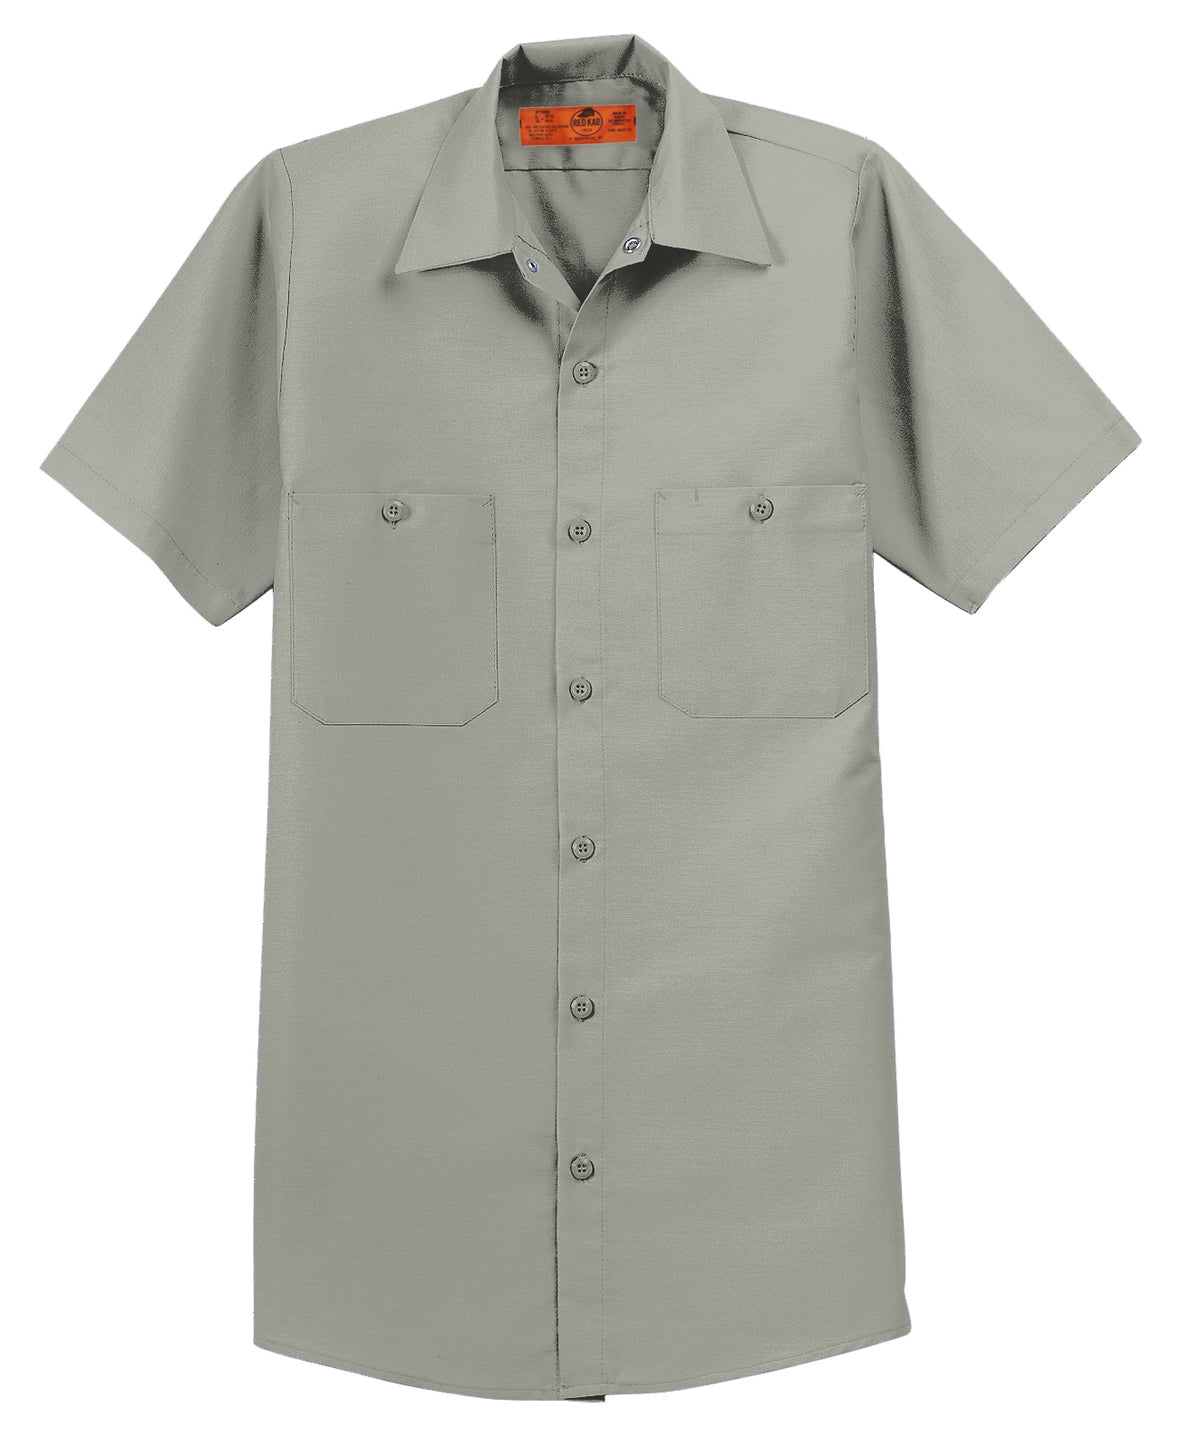 SP24 Red Kap Short Sleeve Industrial Work Shirt